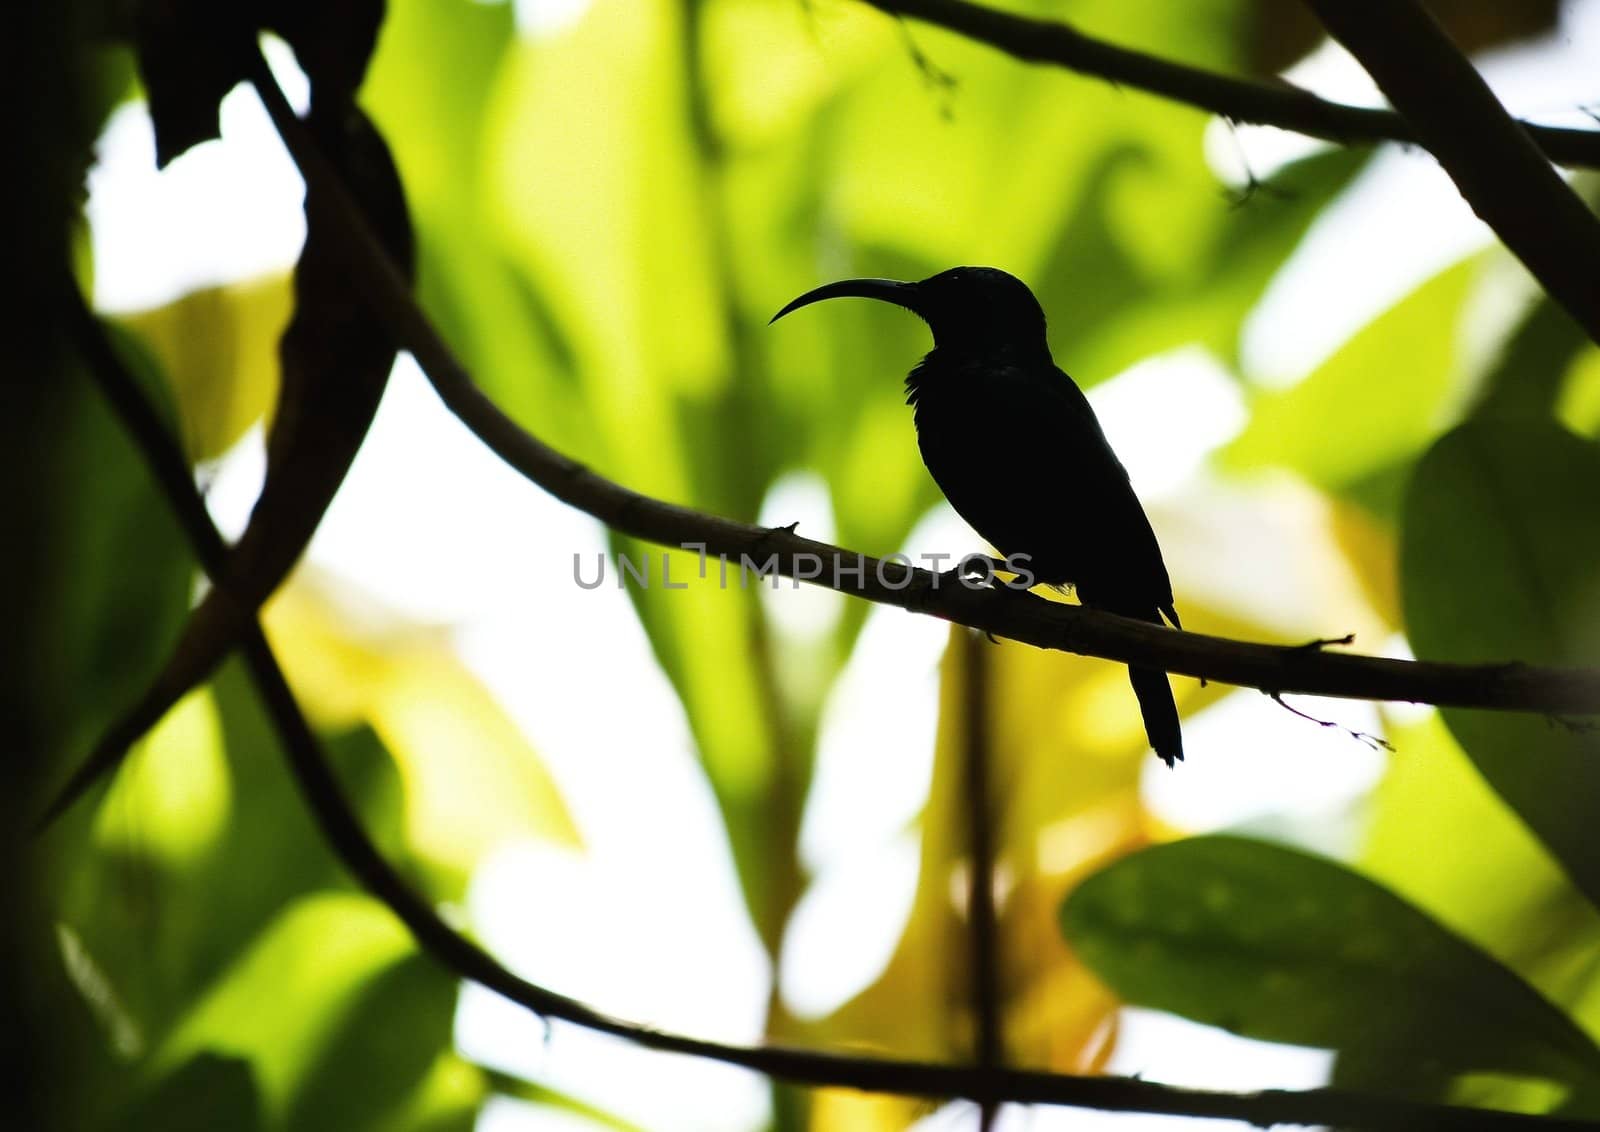 Long beak bird silhouette,Sri Lanka fauna world